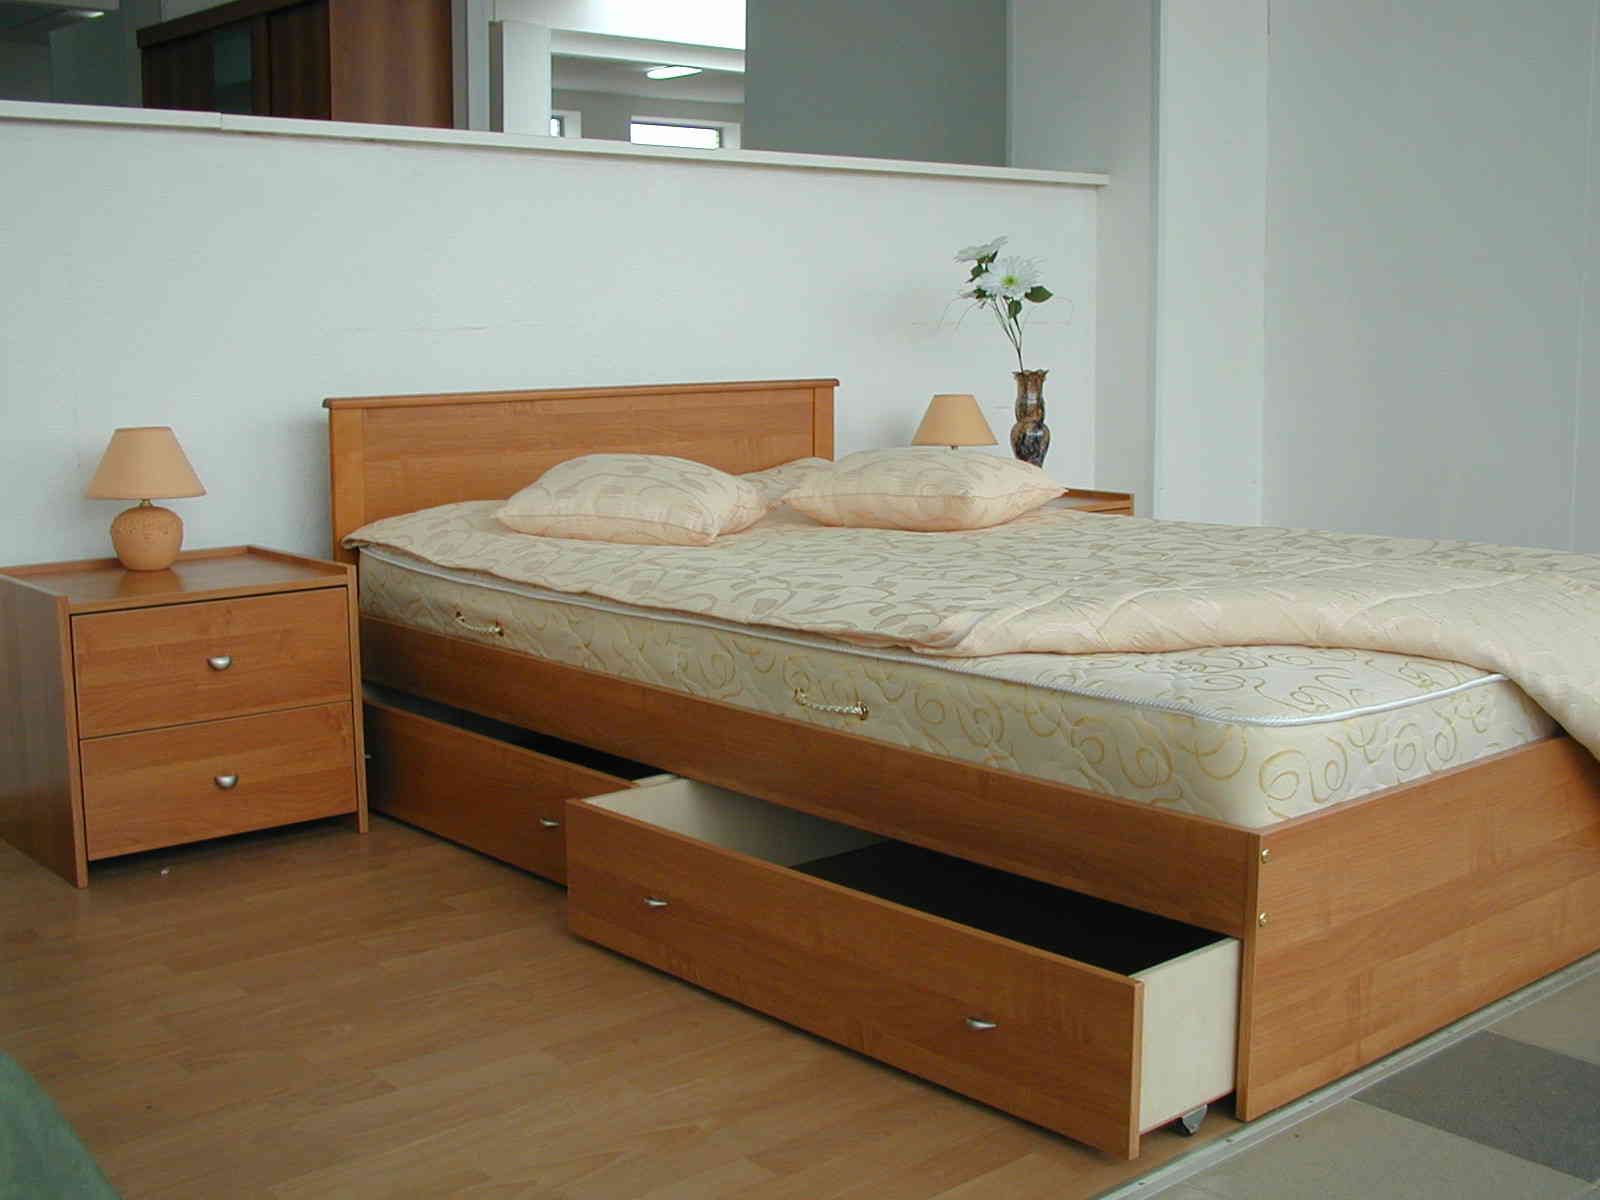 Мебель полуторка. Двуспальная кровать. Кровать двуспальная с выдвижными ящиками. Кровати в спальню двуспальные. Кровать с выдвижными тумбочками.